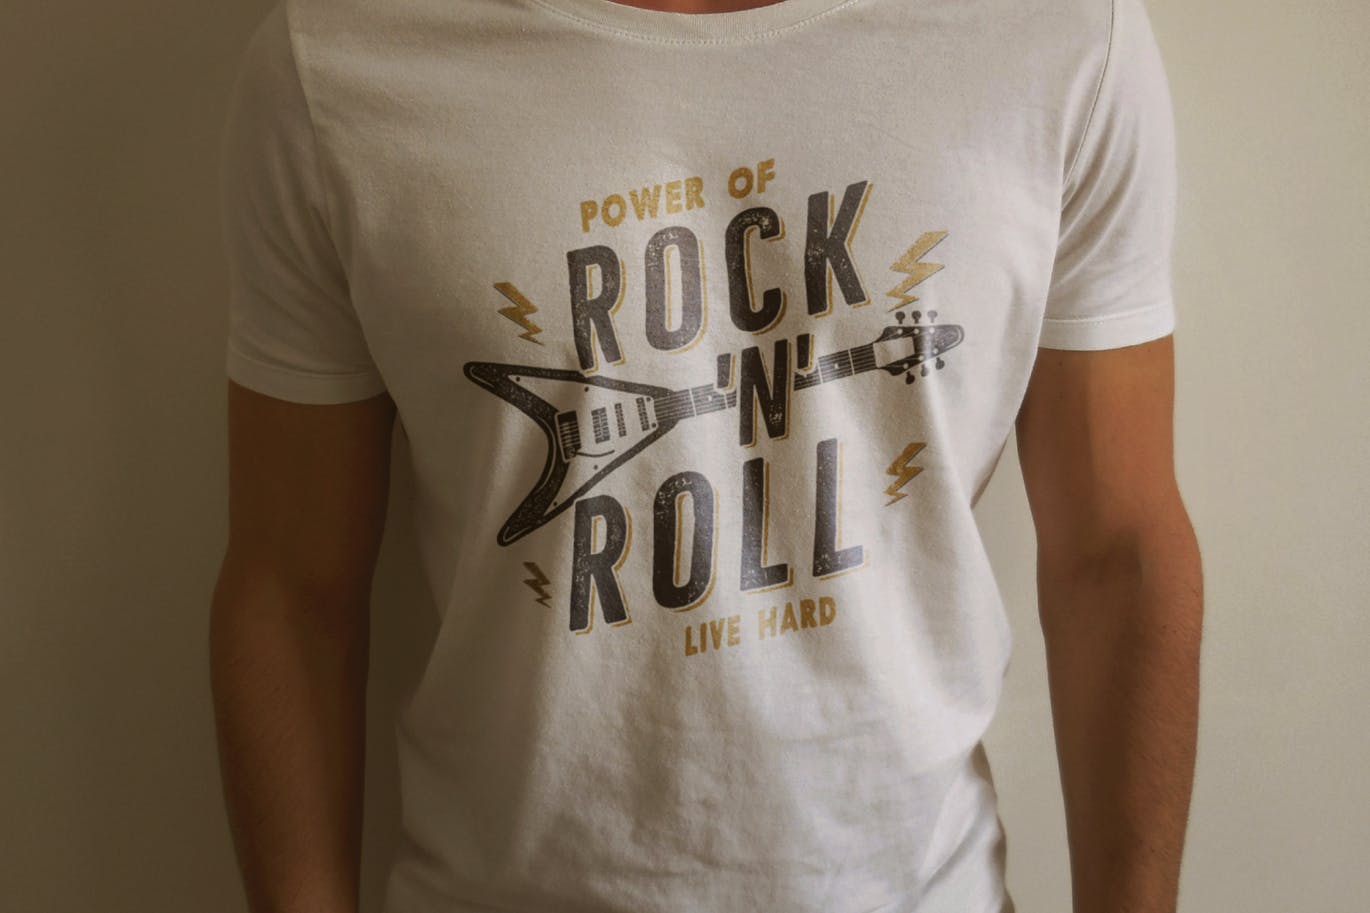 T恤复古设计风格摇滚音乐主题印花图案插画 Music Rock n Roll Print for T-Shirt, Retro Design插图3